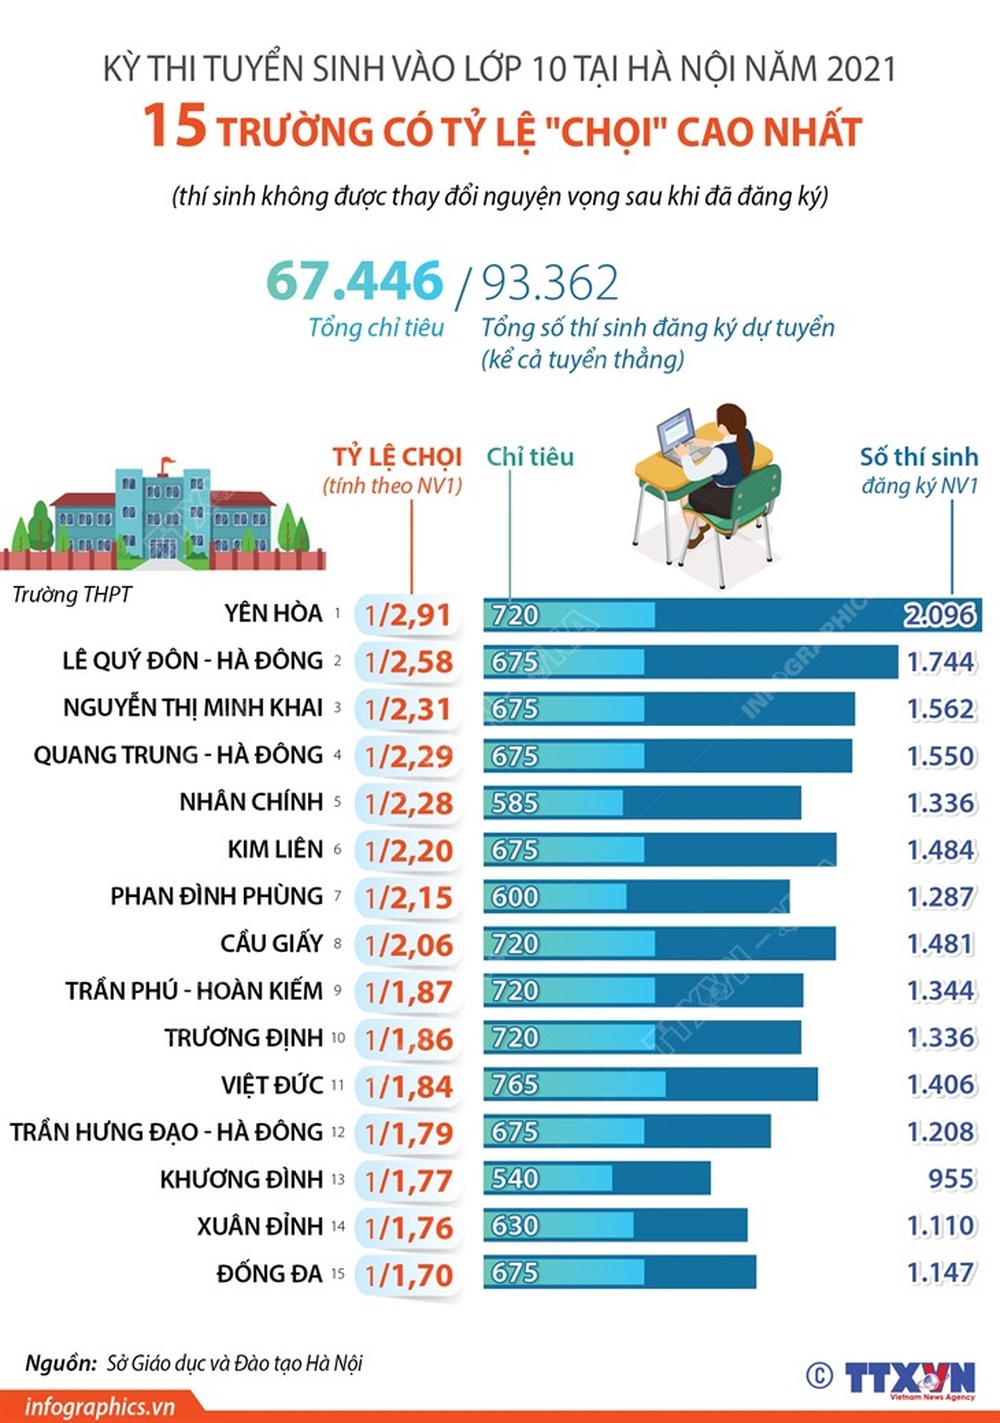 Tuyển sinh lớp 10 tại Hà Nội: 15 trường có tỷ lệ “chọi” cao nhất - Ảnh 1.